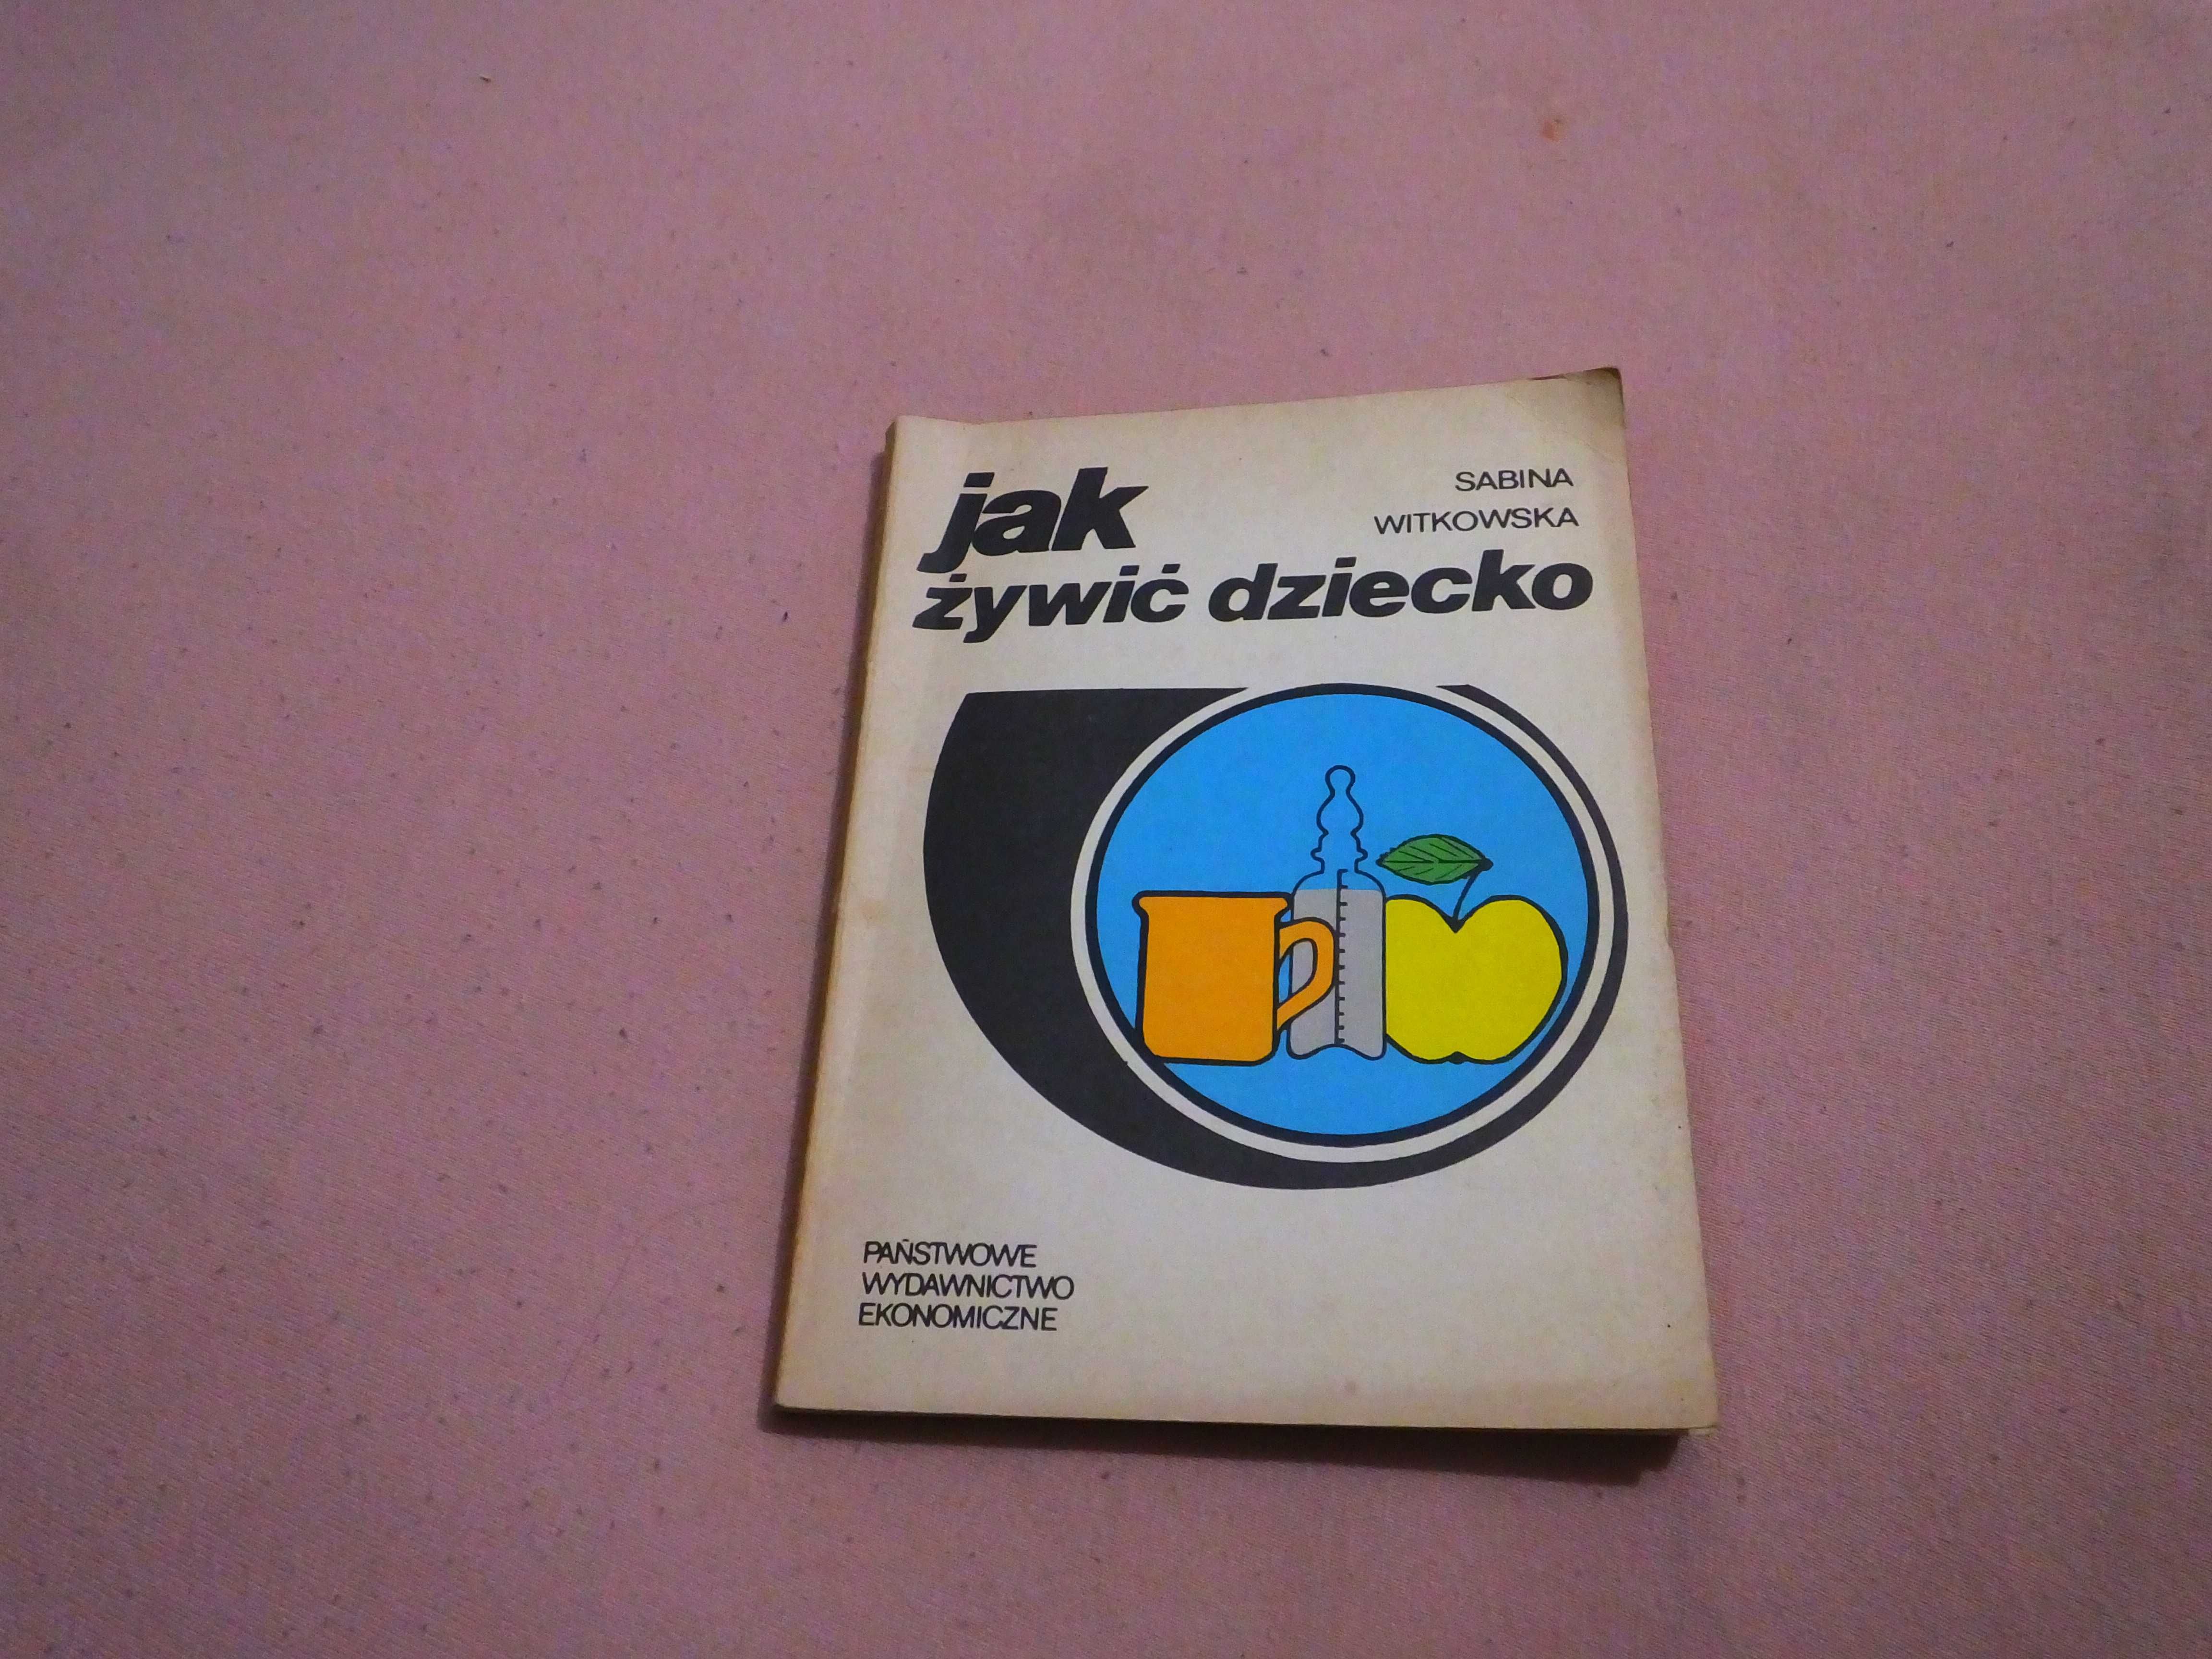 Książka "Jak żywić dziecko" - Sabina Witkowska